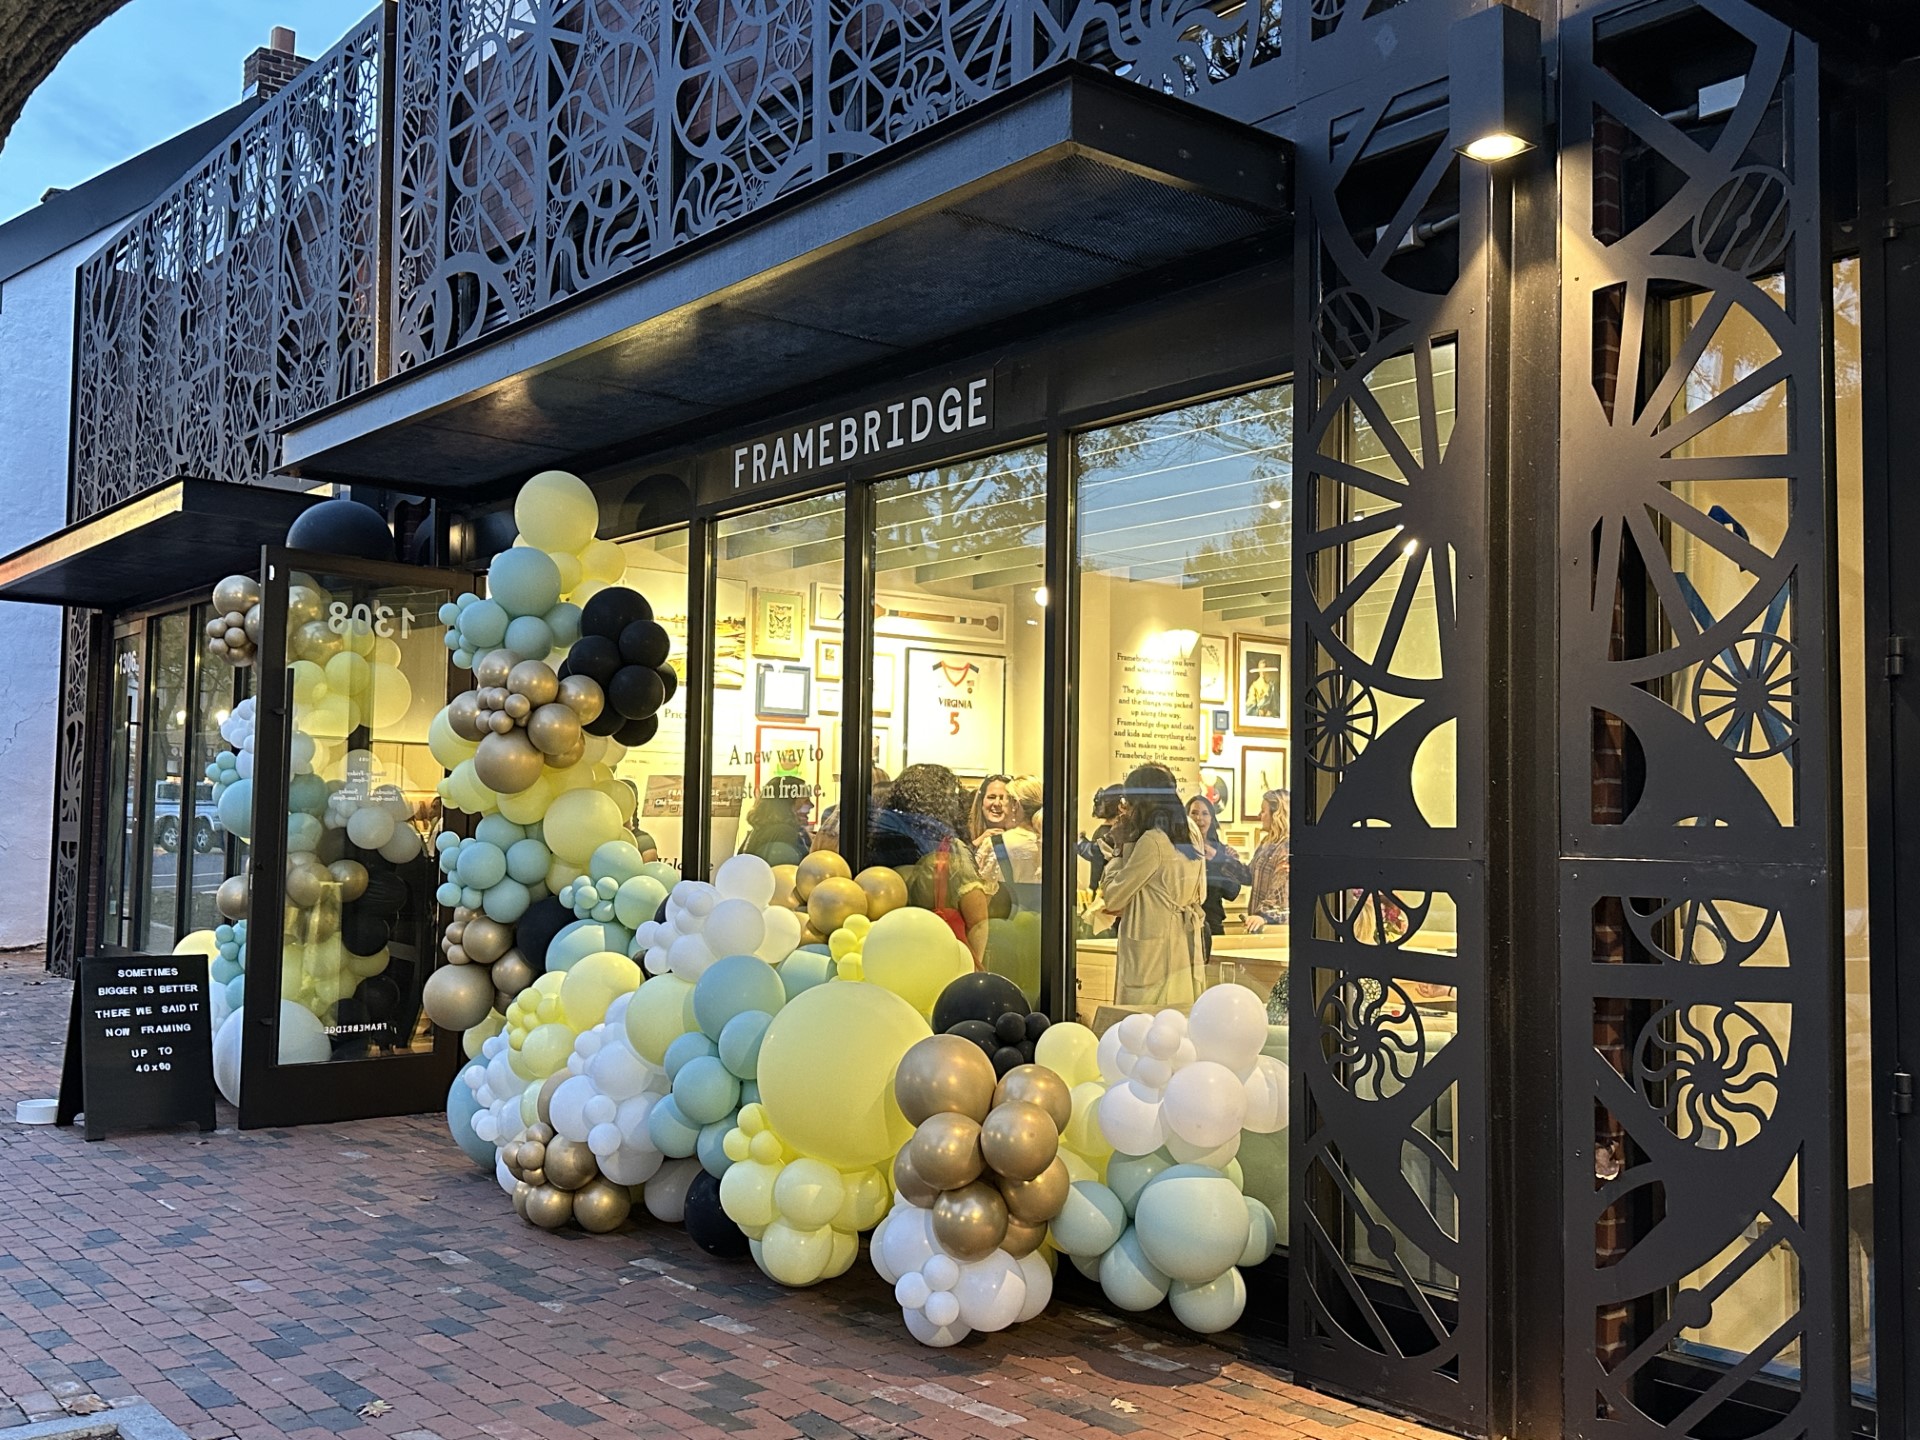 OUtside of Framebridge store with balloons.